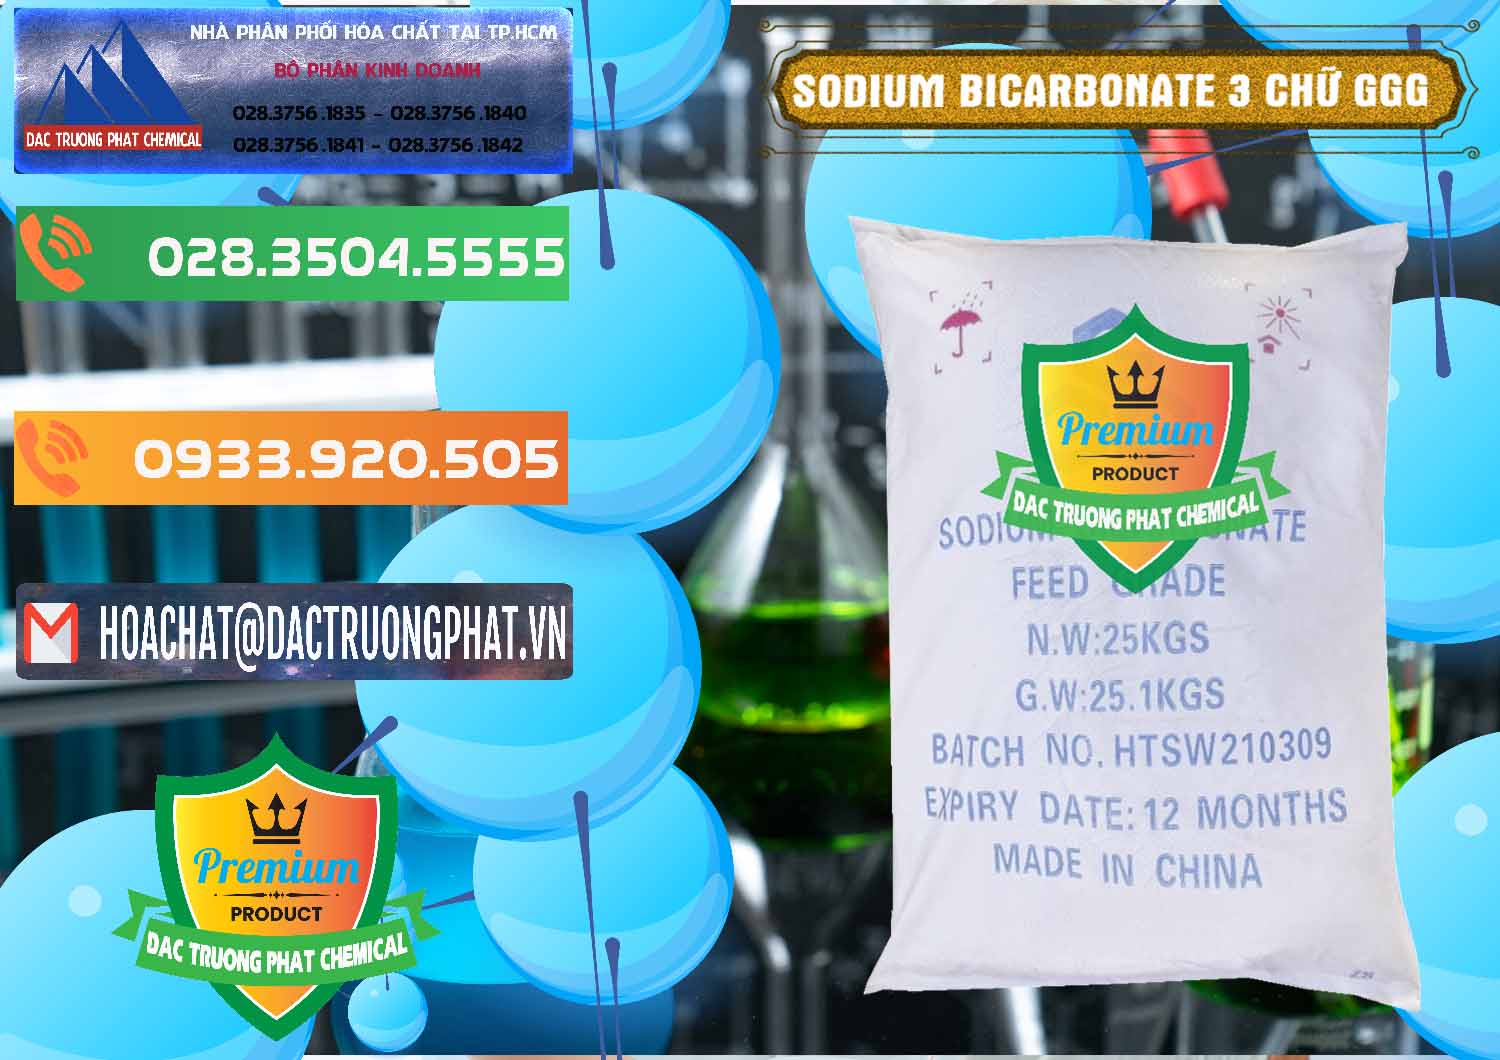 Đơn vị chuyên bán _ cung cấp Sodium Bicarbonate – Bicar NaHCO3 Food Grade 3 Chữ GGG Trung Quốc China - 0259 - Nơi nhập khẩu & phân phối hóa chất tại TP.HCM - hoachatxulynuoc.com.vn